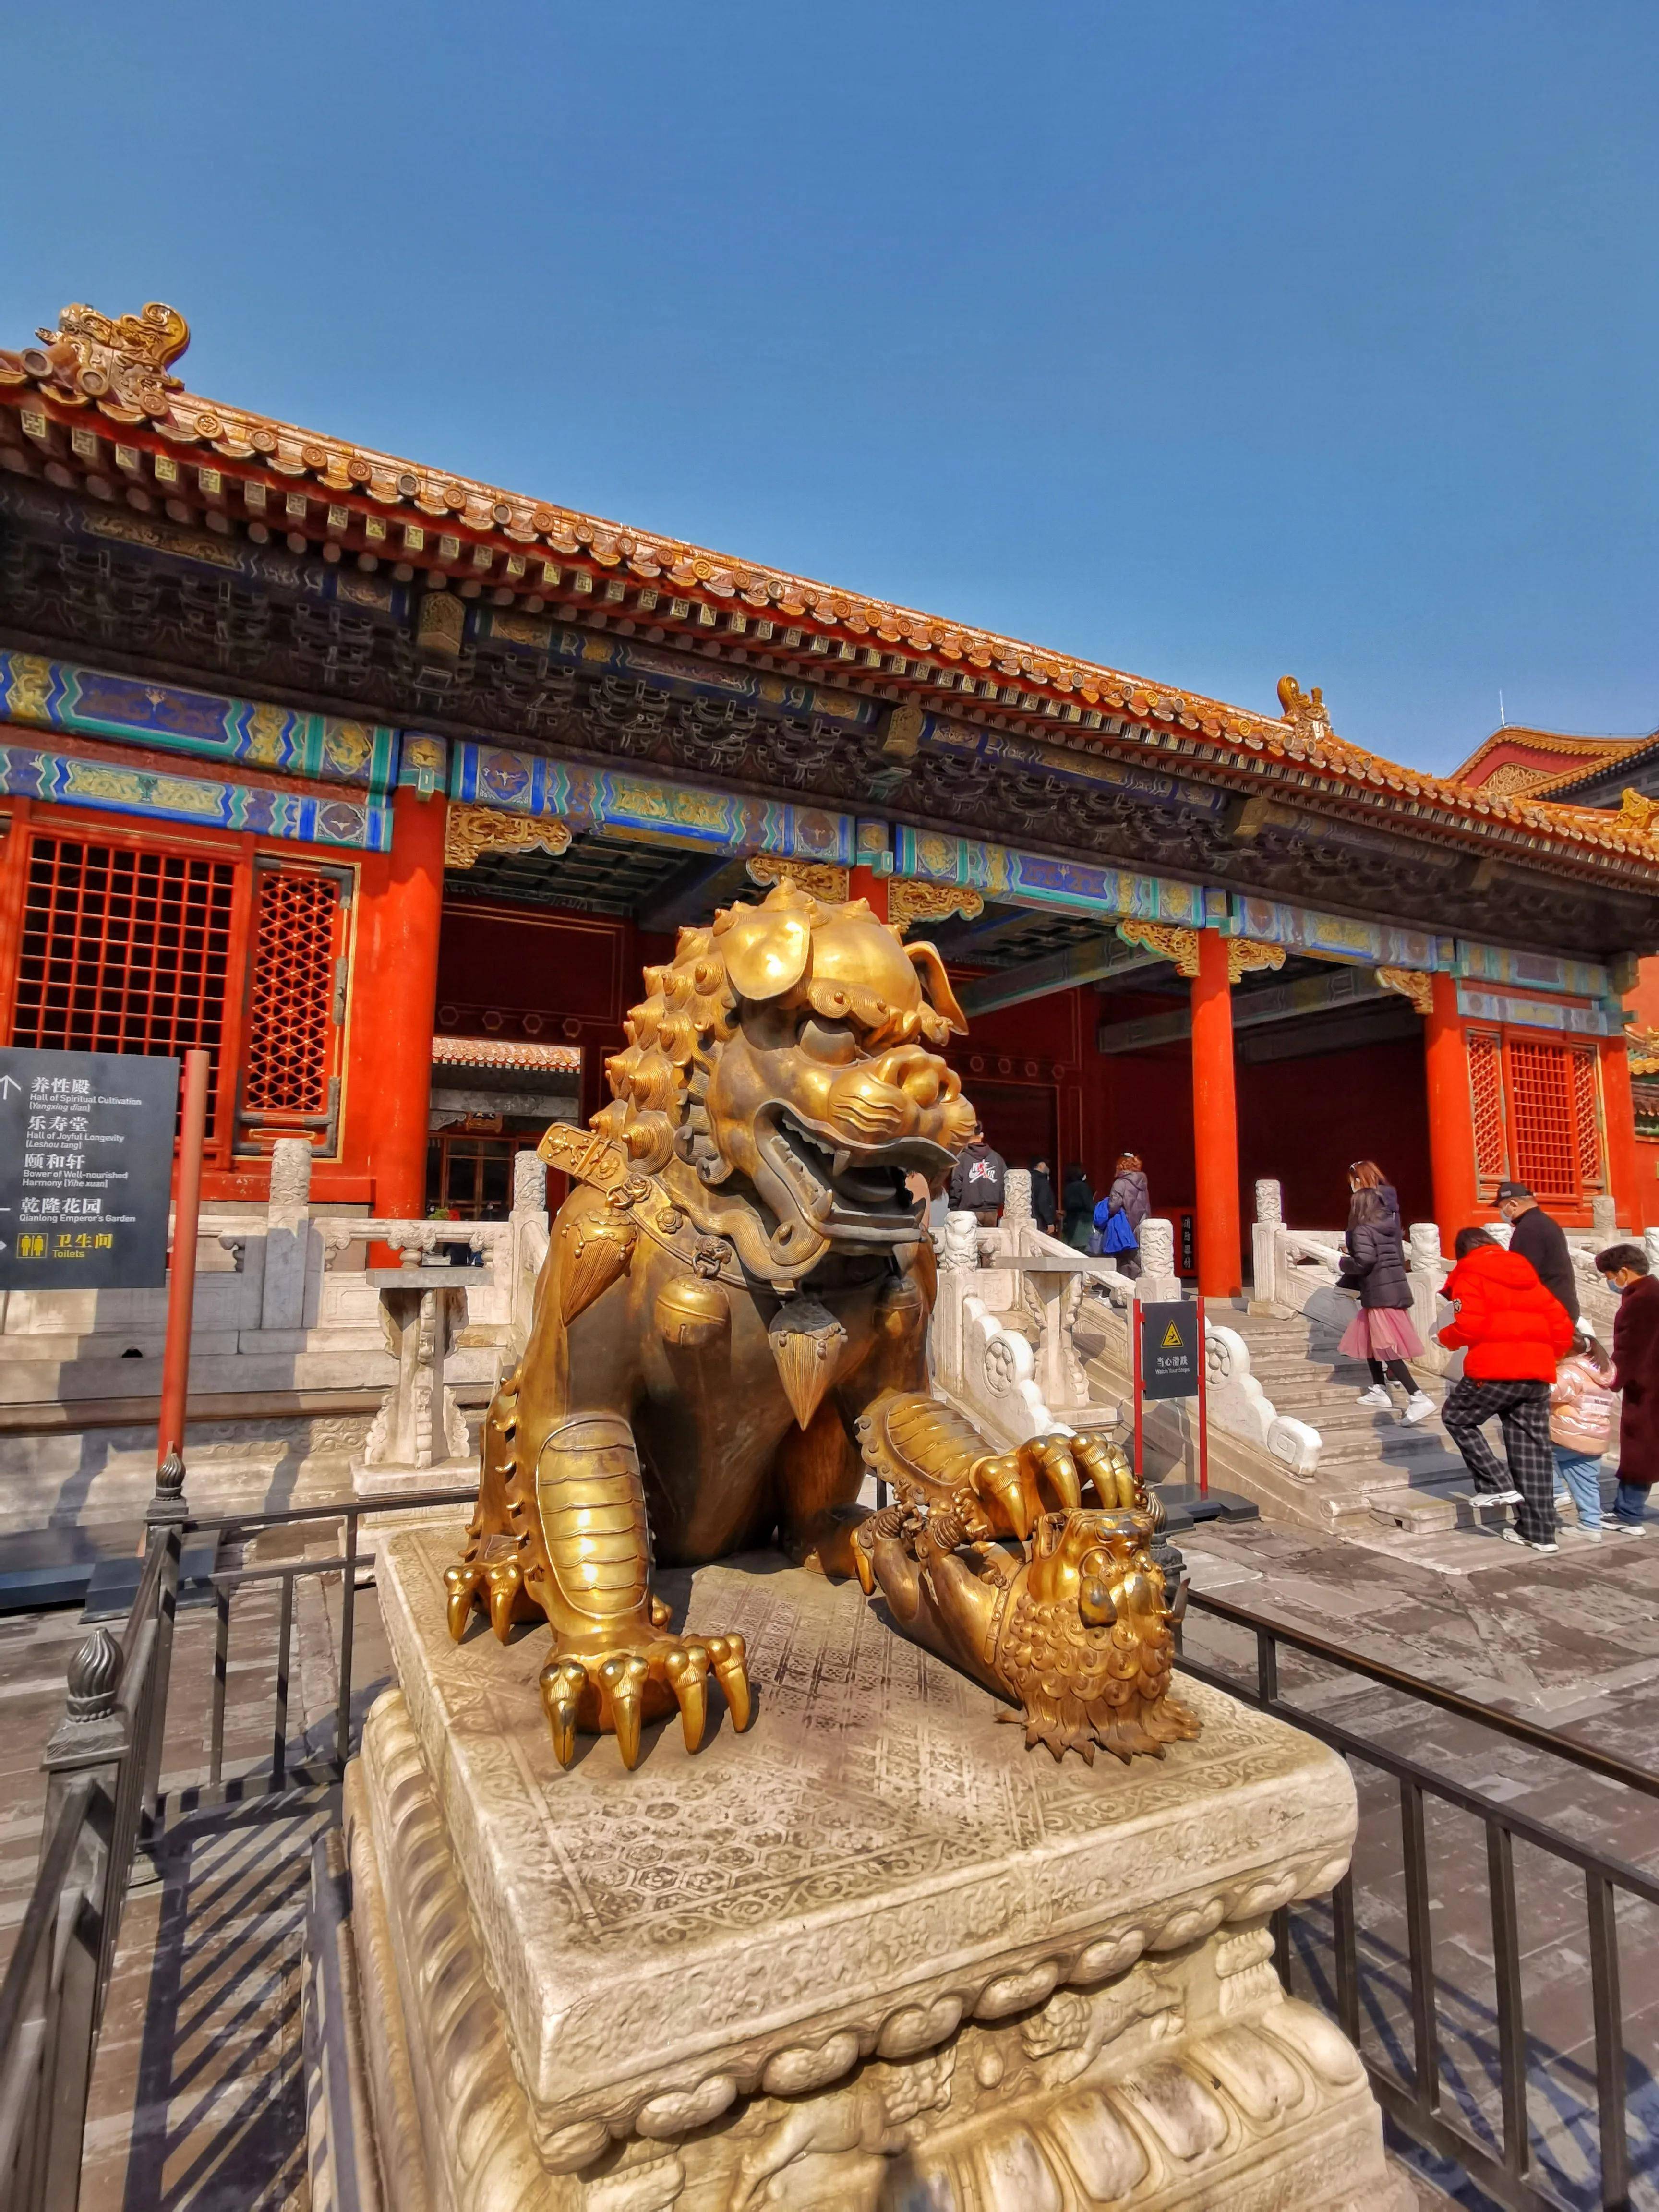 我的摄影:世界五大宫殿之一,北京故宫.